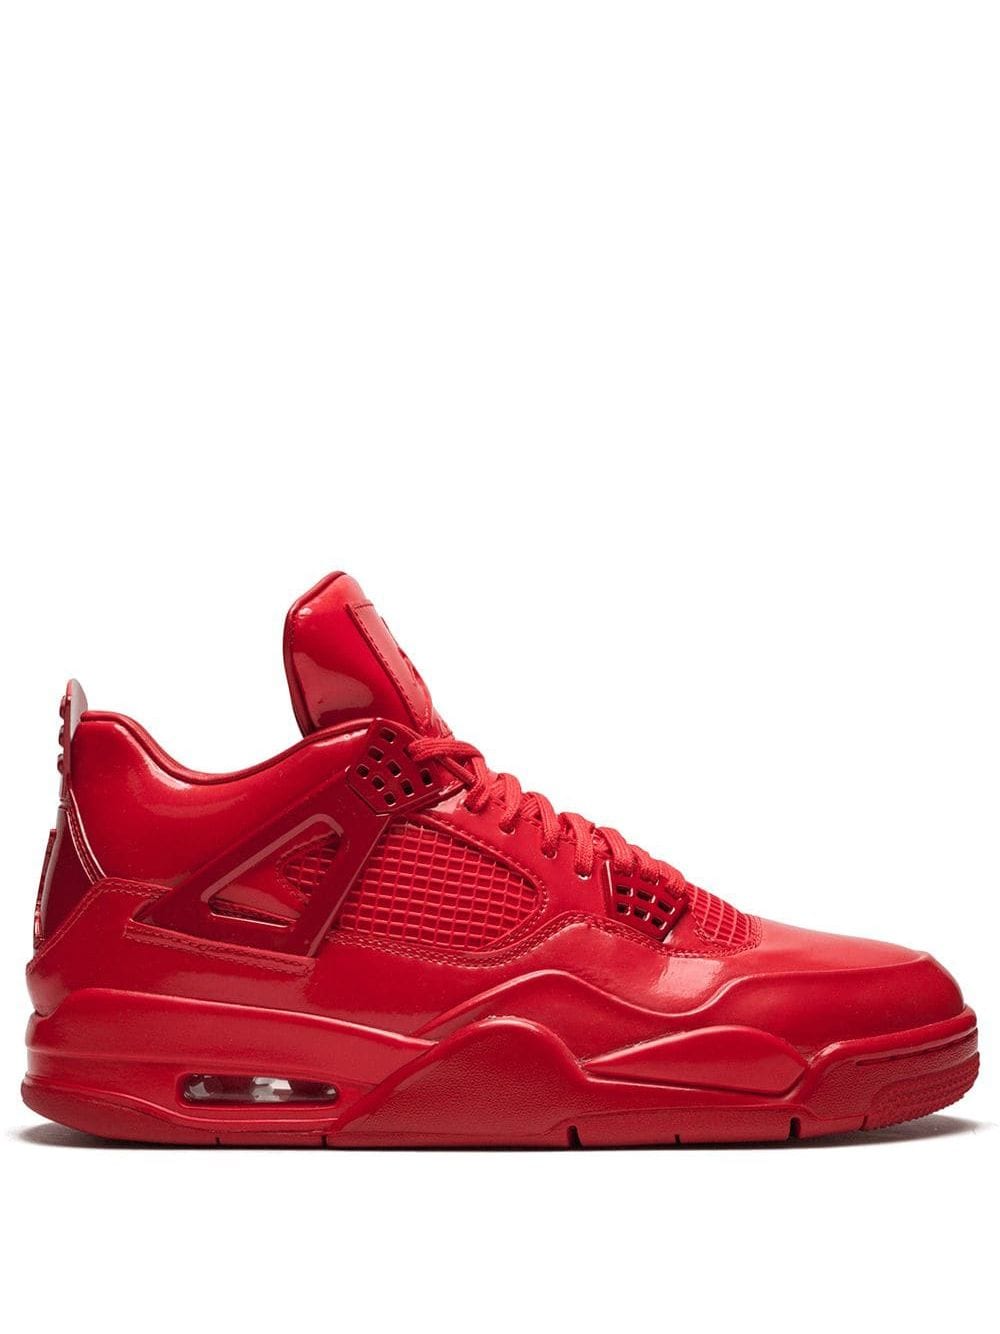 Jordan Air Jordan 4 11Lab4 "University Red" sneakers